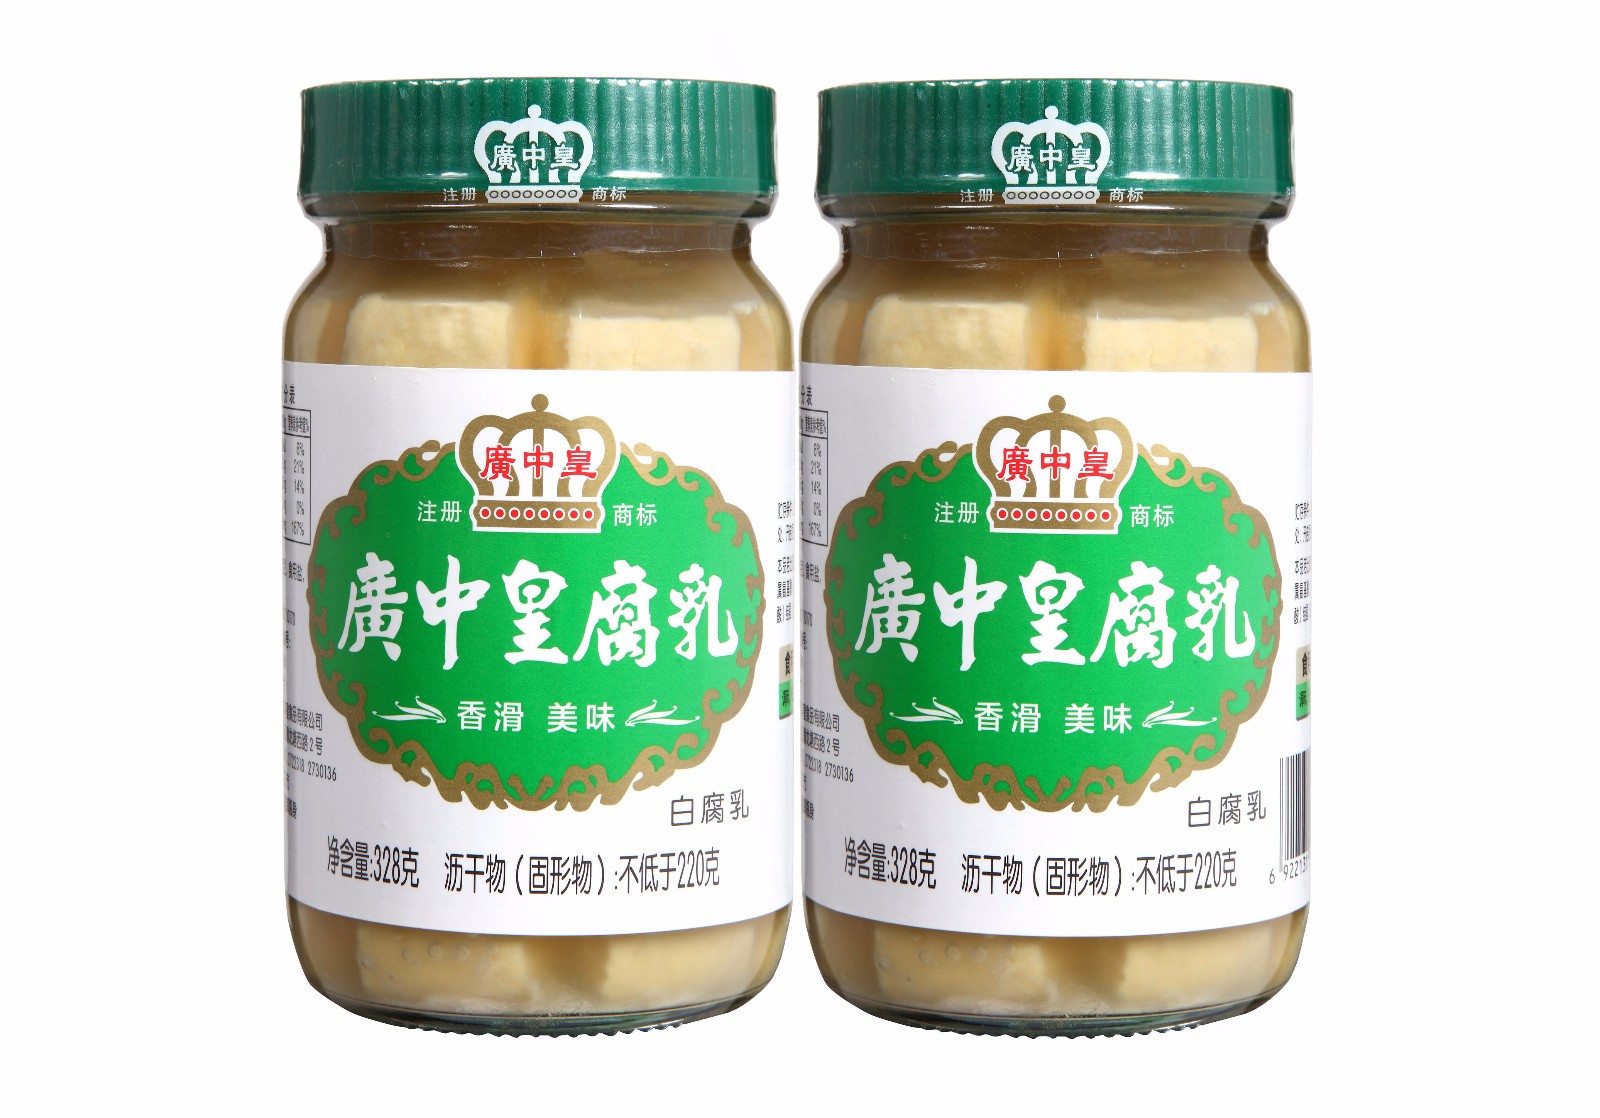 广中皇腐乳(白)328g 调味酱类 深圳市深多宝商贸有限公司